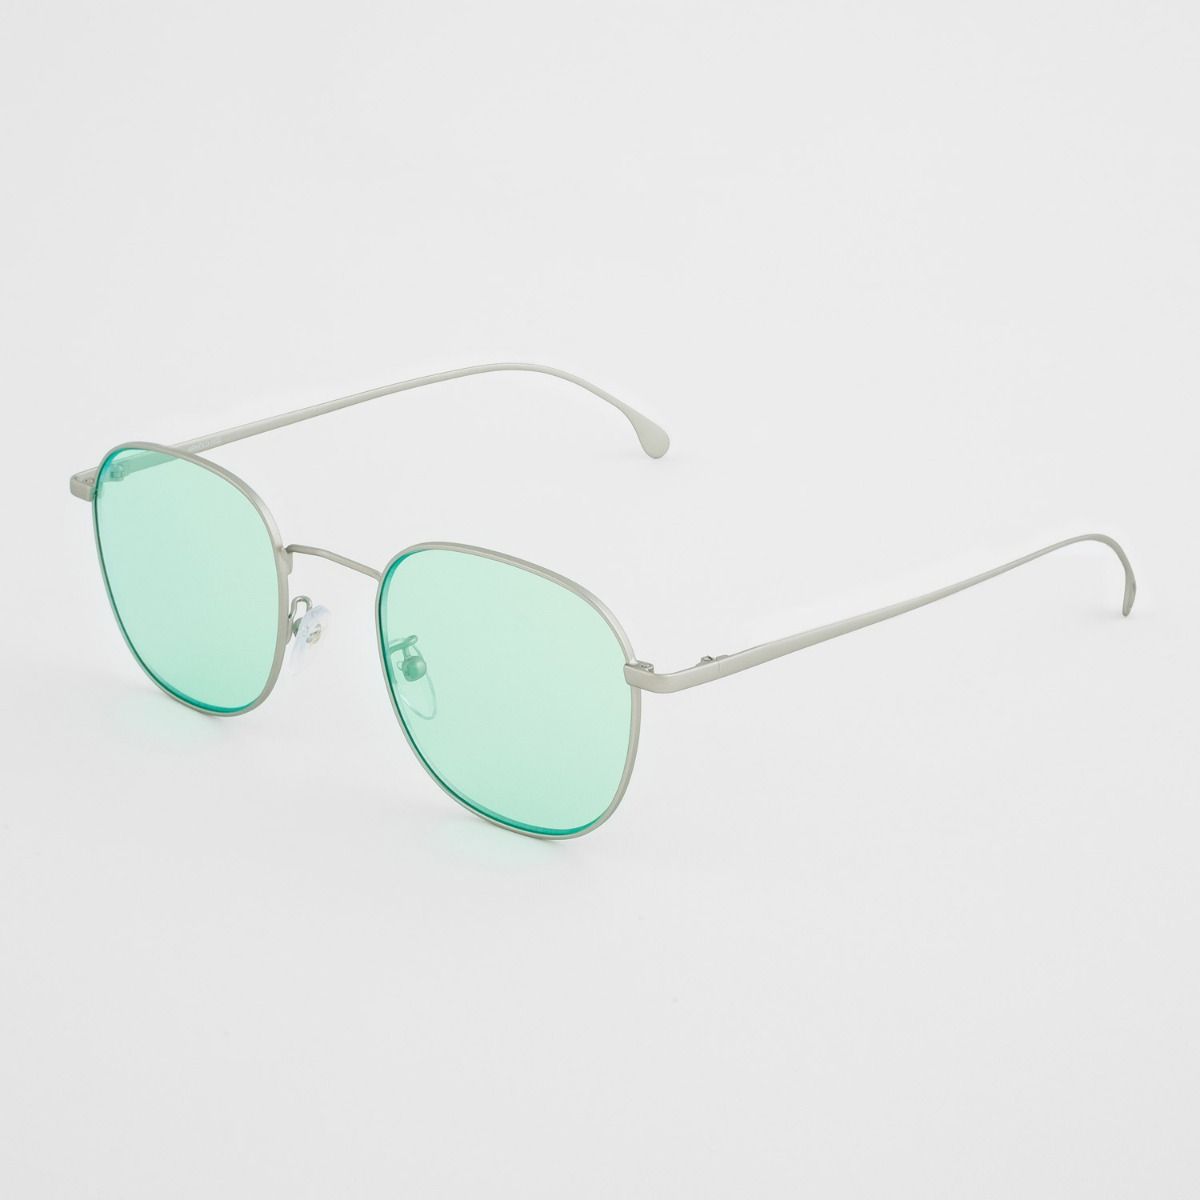 Paul Smith Arnold Square Sunglasses